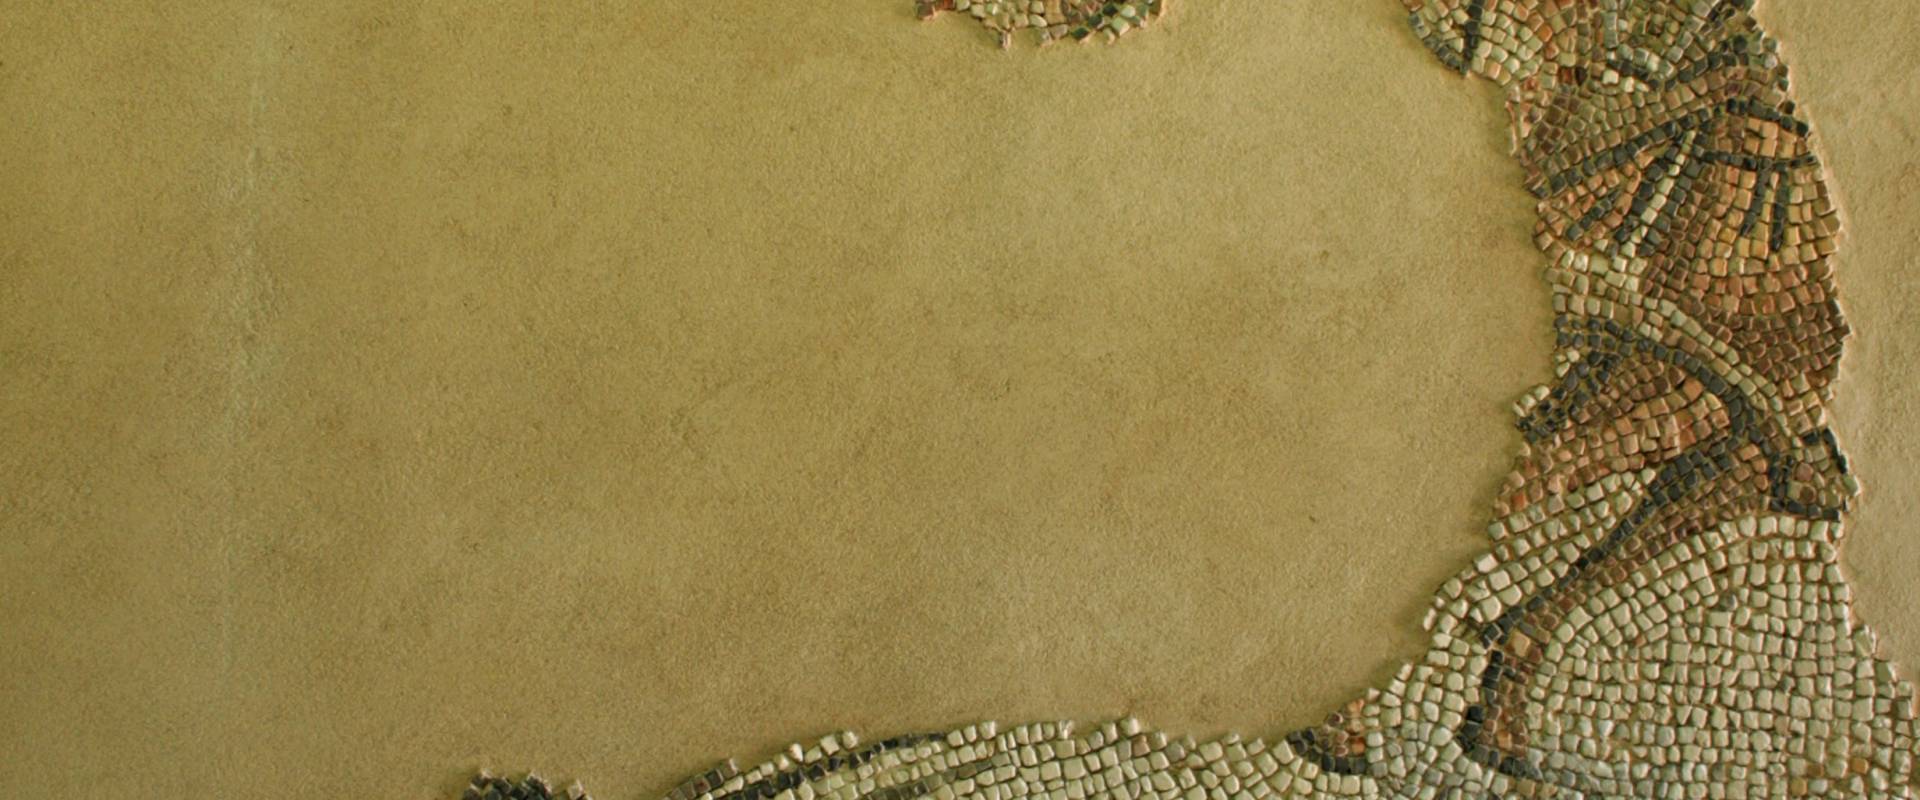 Palazzo di Teodorico - Mosaico piano superiore 7 foto di Walter manni